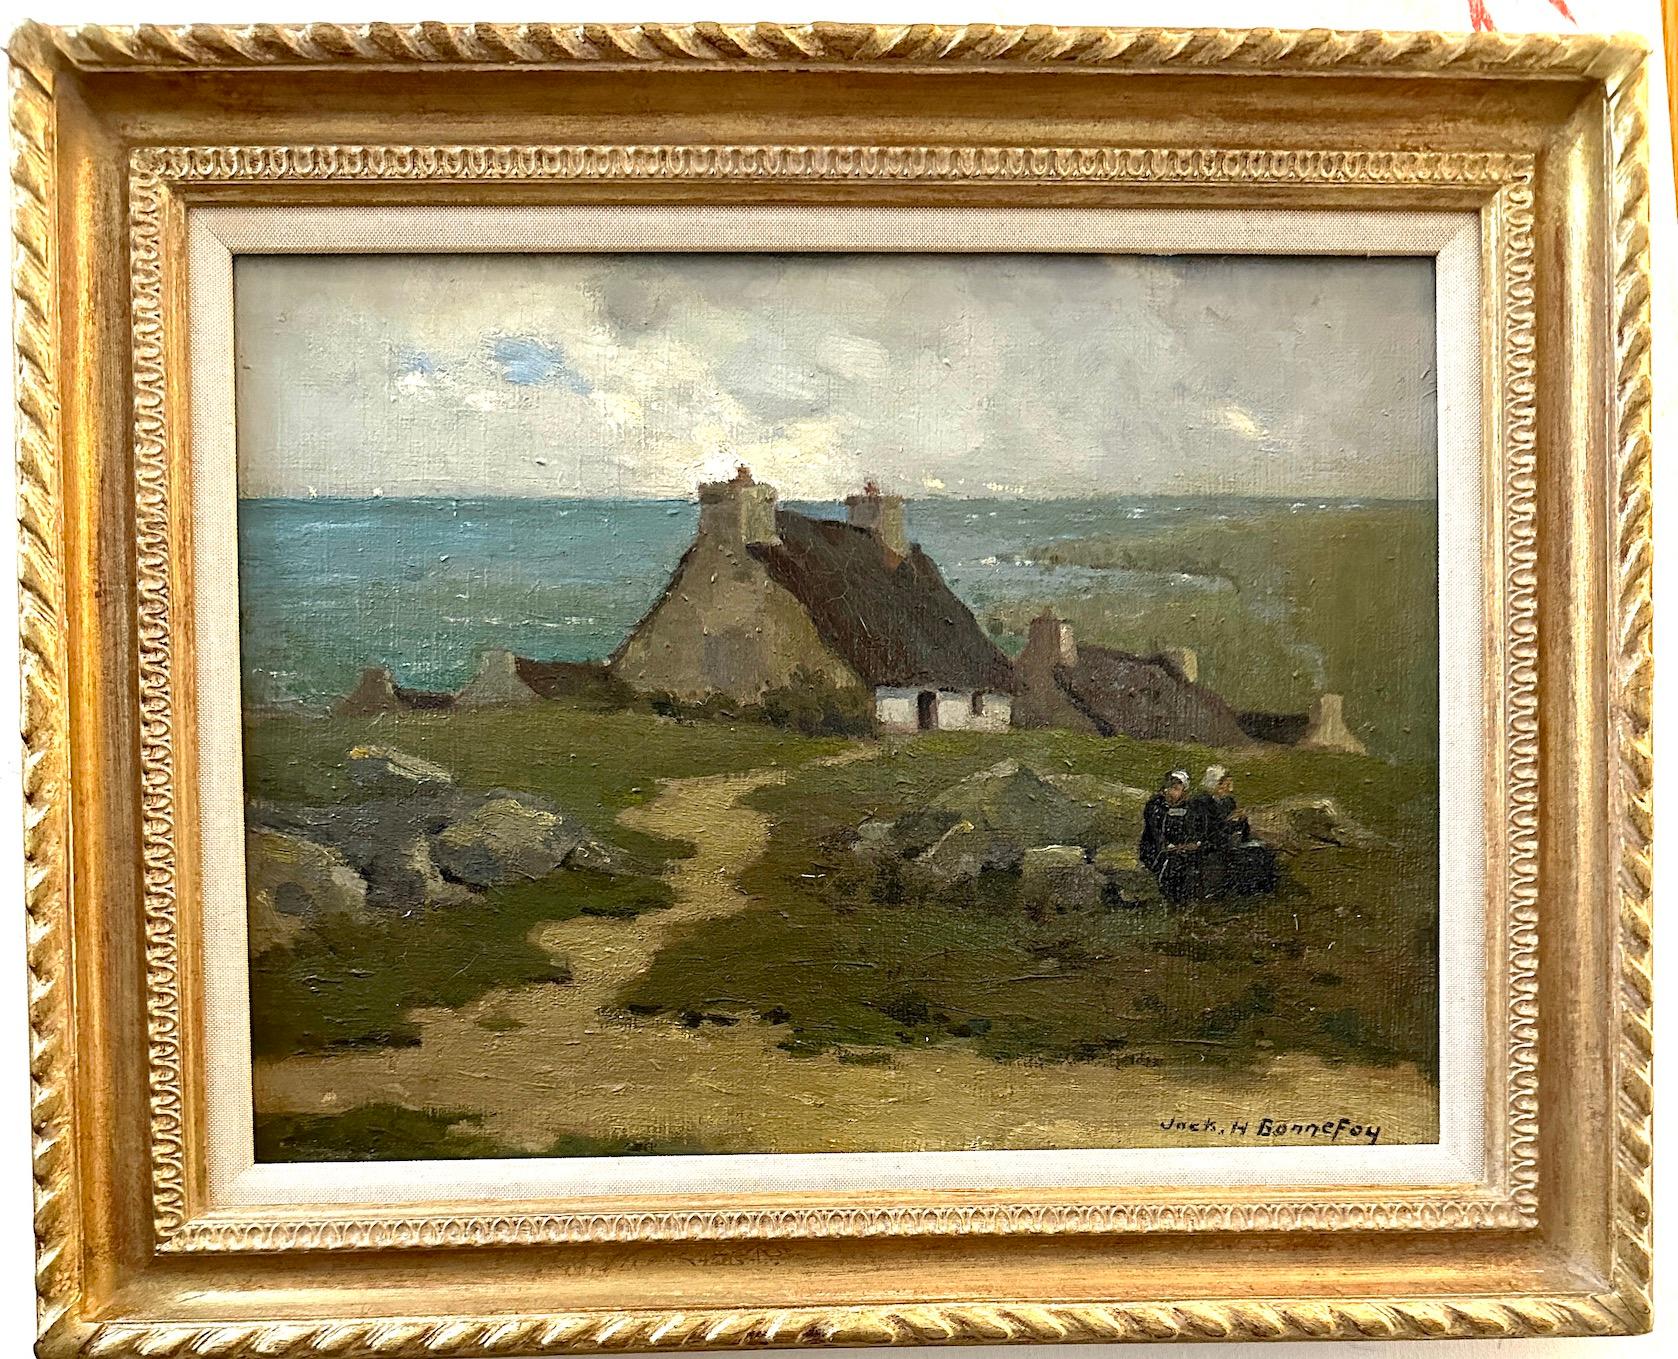 Jack Hubert Bonnefoy Figurative Painting - 19th century French Impressionist Breton landscape with cottage, figures 